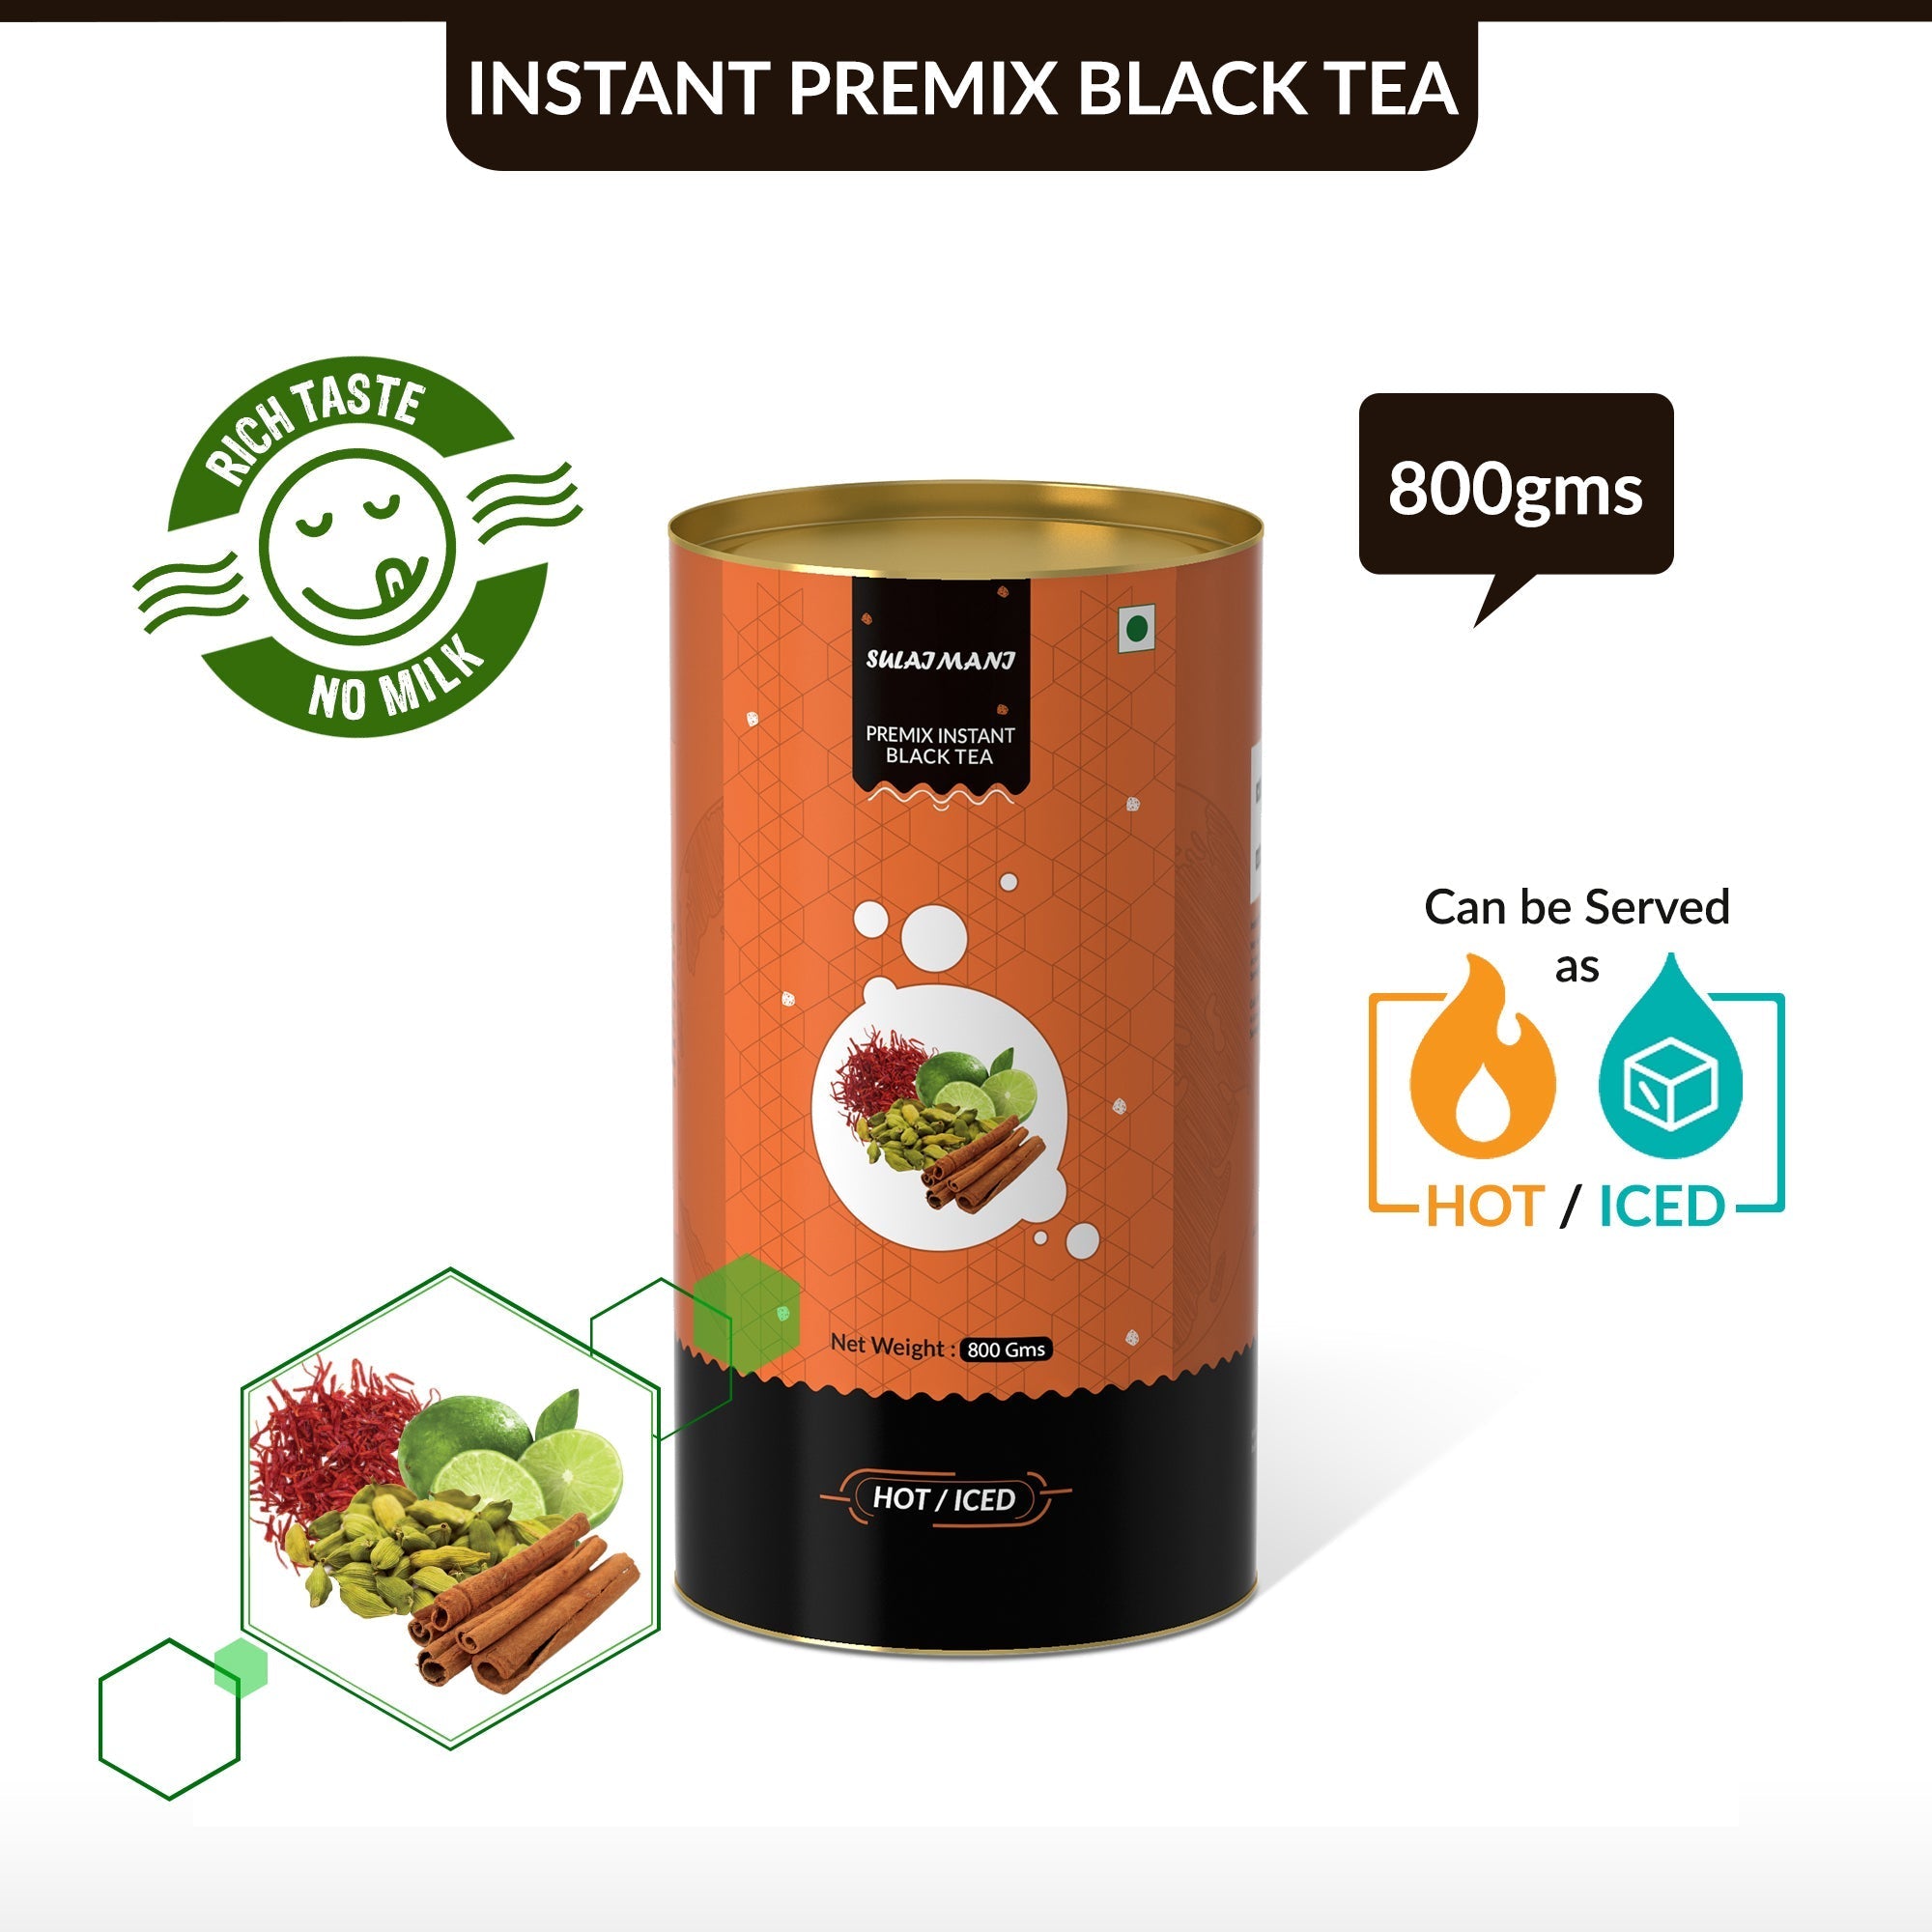 Sulaimani Flavored Instant Black Tea - 800 gms